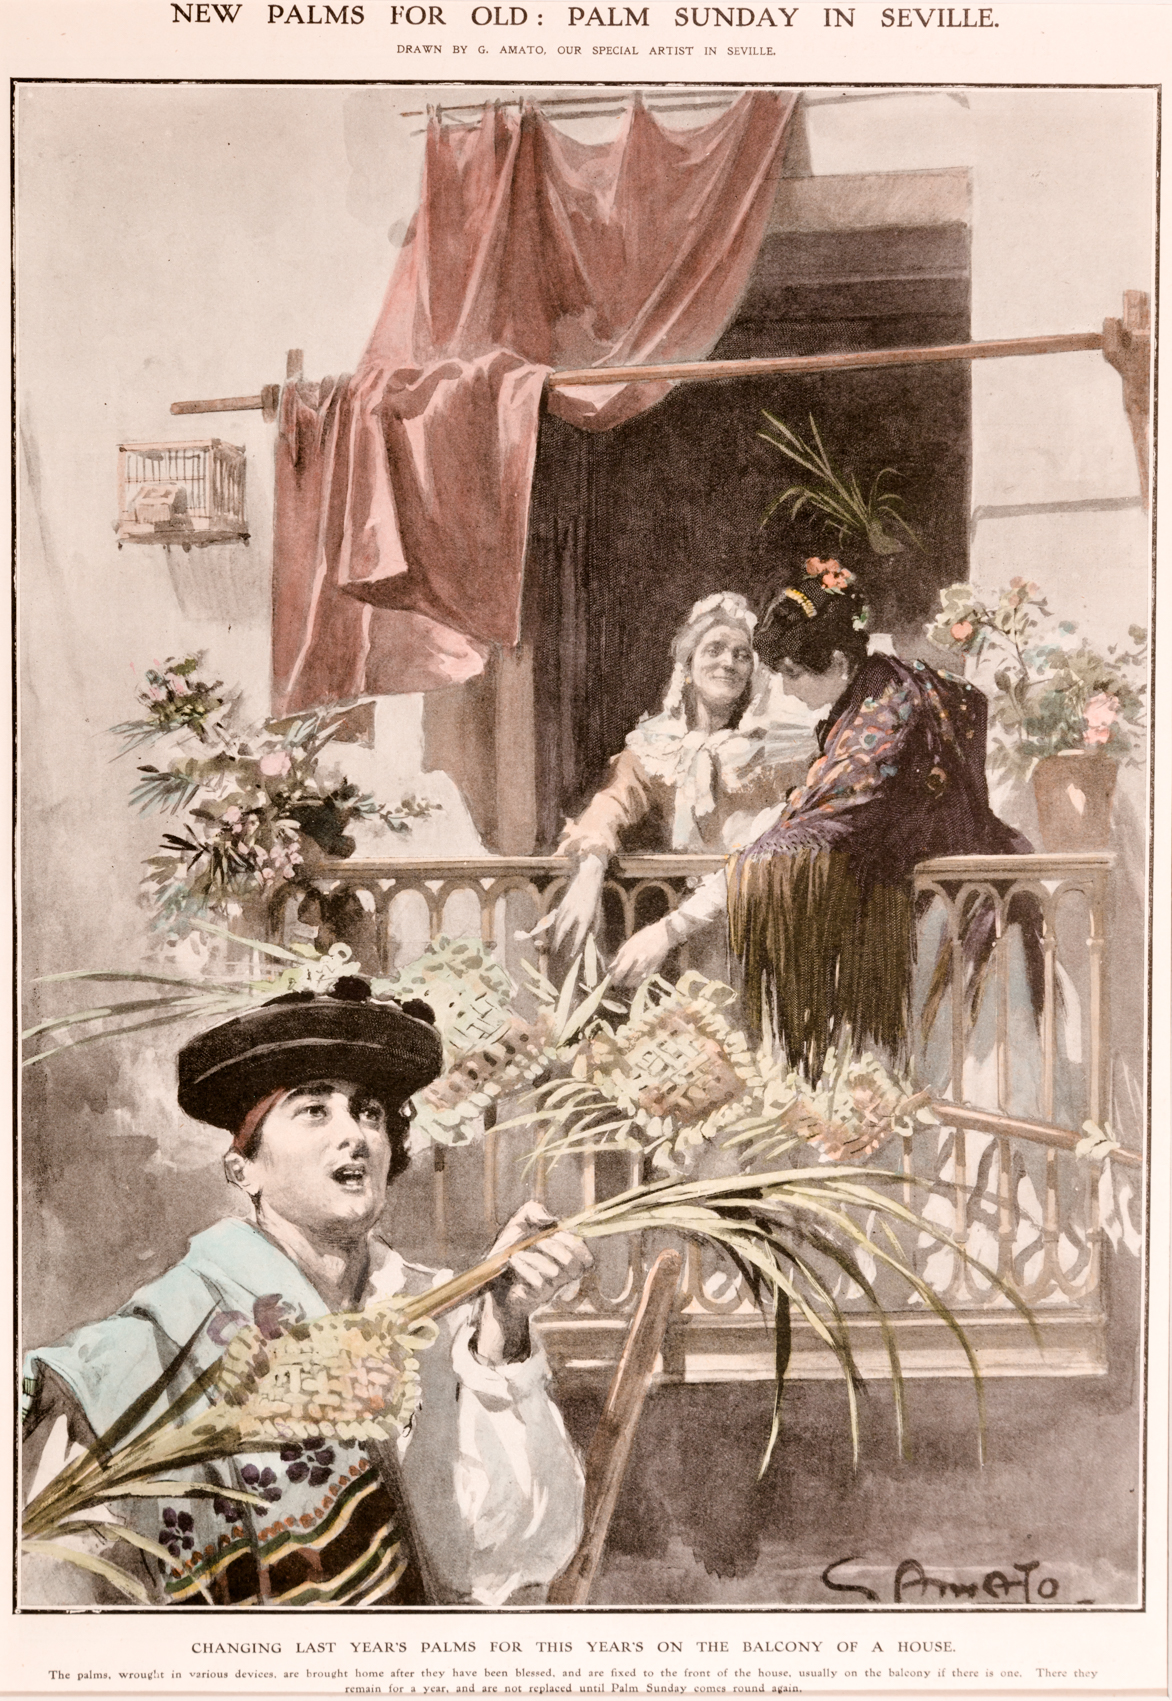 Genaro Amato (dibujante). Domingo de Ramos en Sevilla. Cambiando las palmas,1906.Fotograbado.